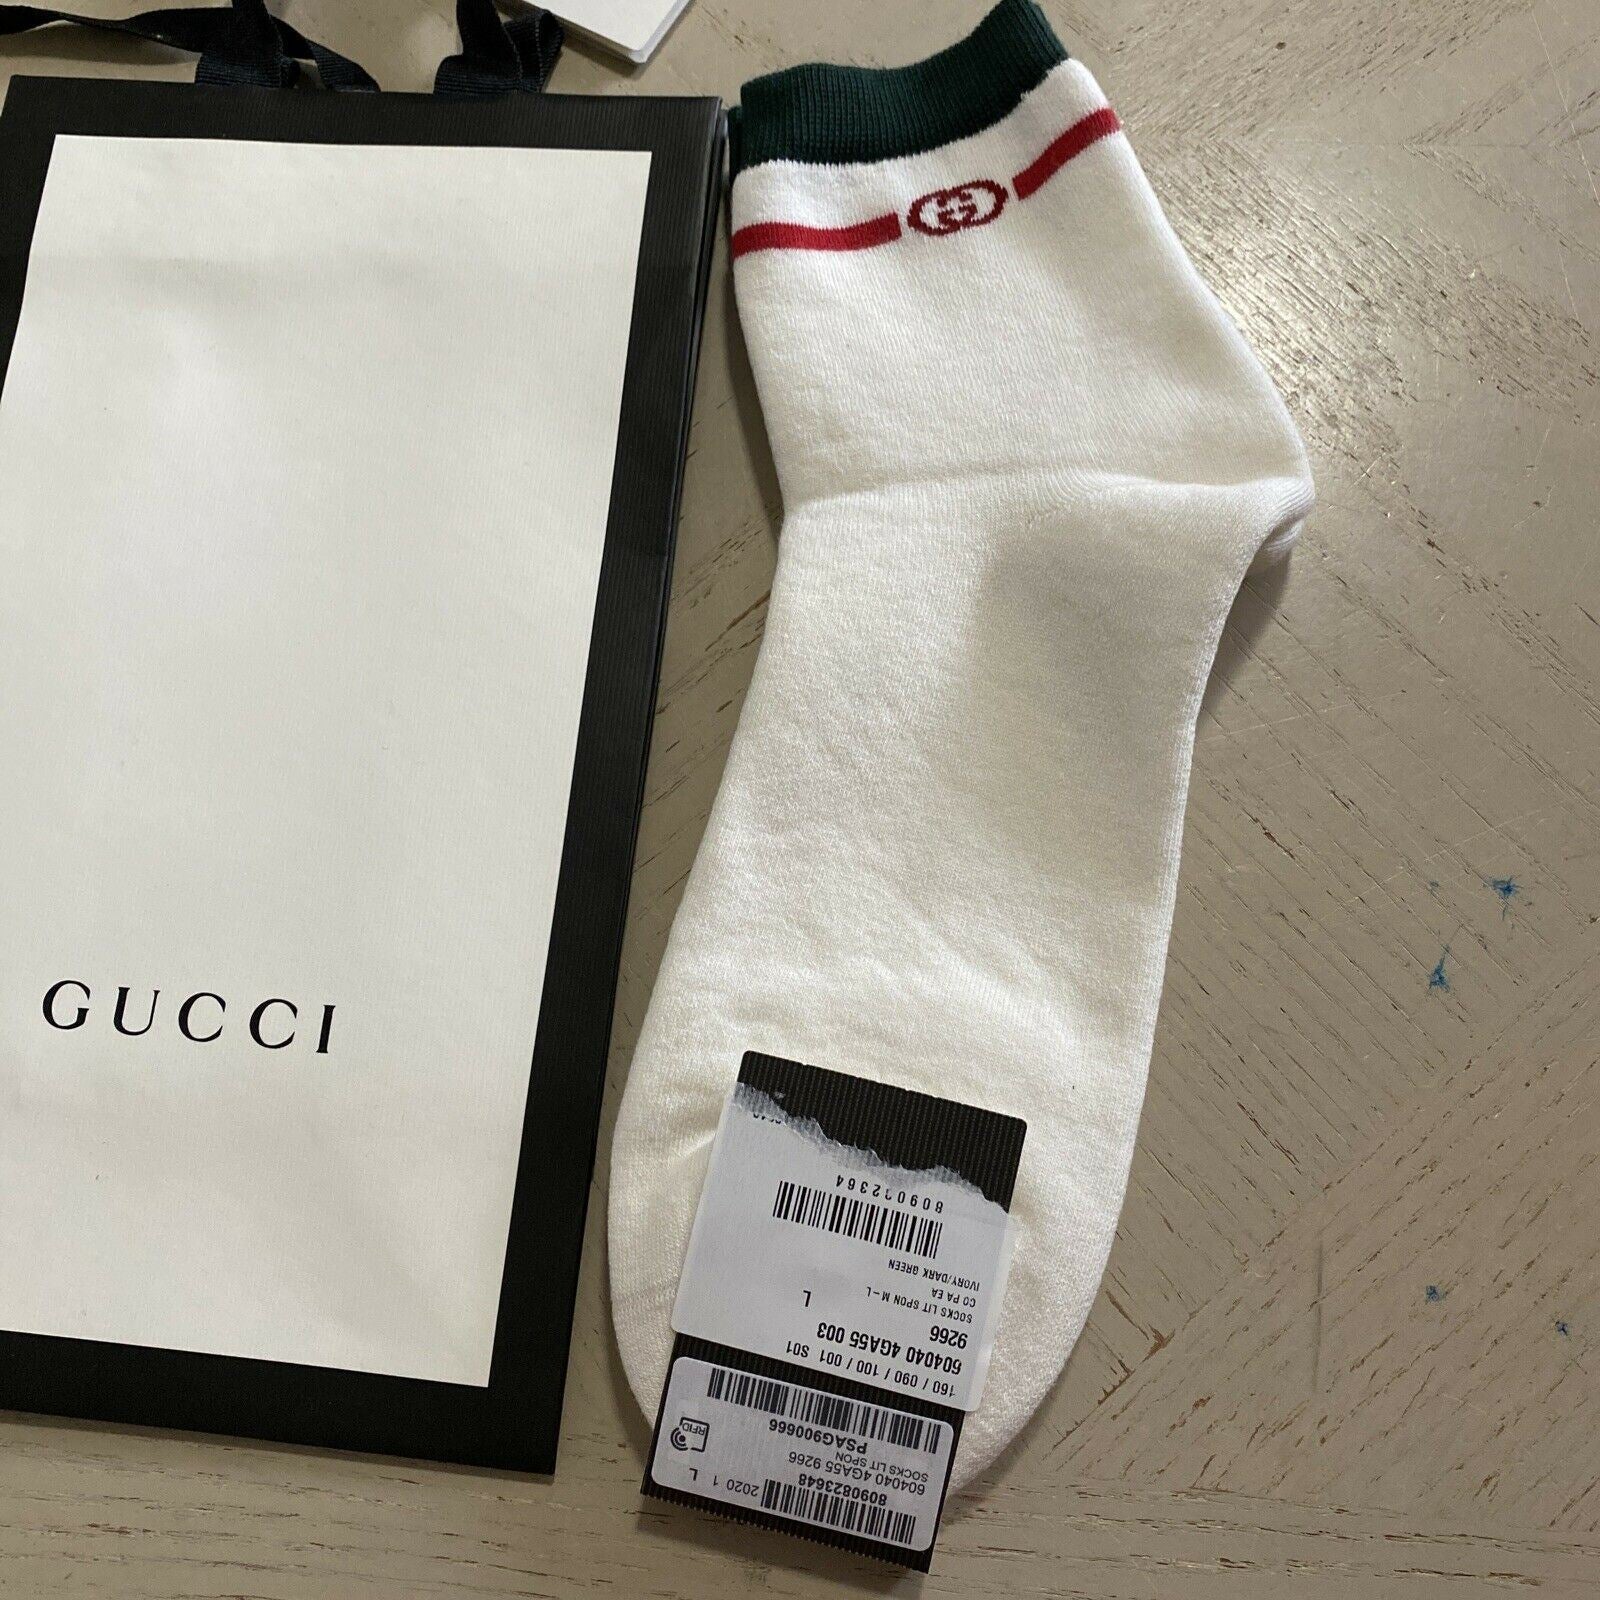 Neu mit Etikett: Gucci Herren-Baumwollsocken mit GG-Monogramm, Weiß, Größe L, Italien